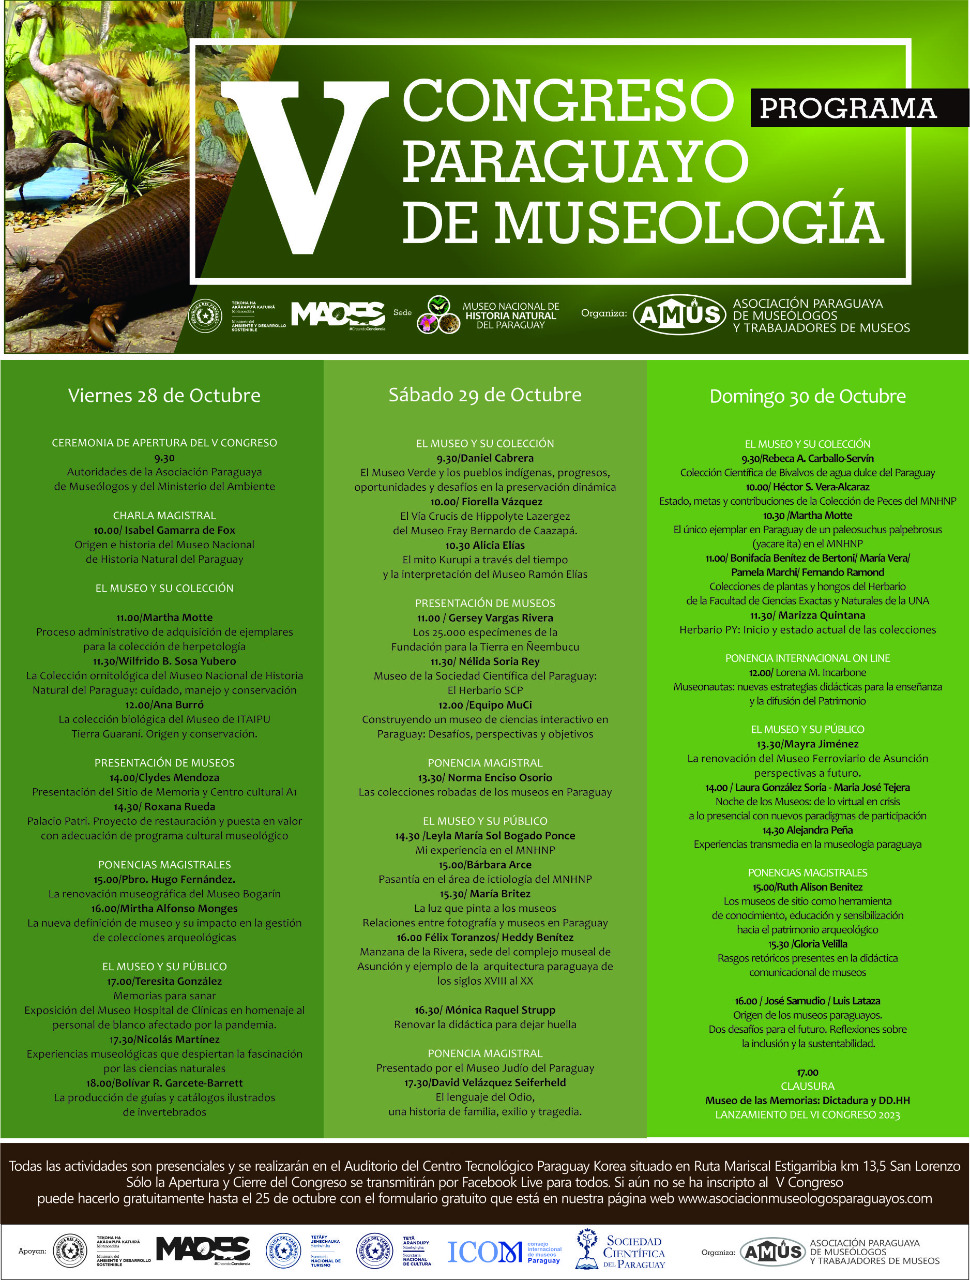 SNC acompaña el V Congreso Paraguayo de Museología imagen